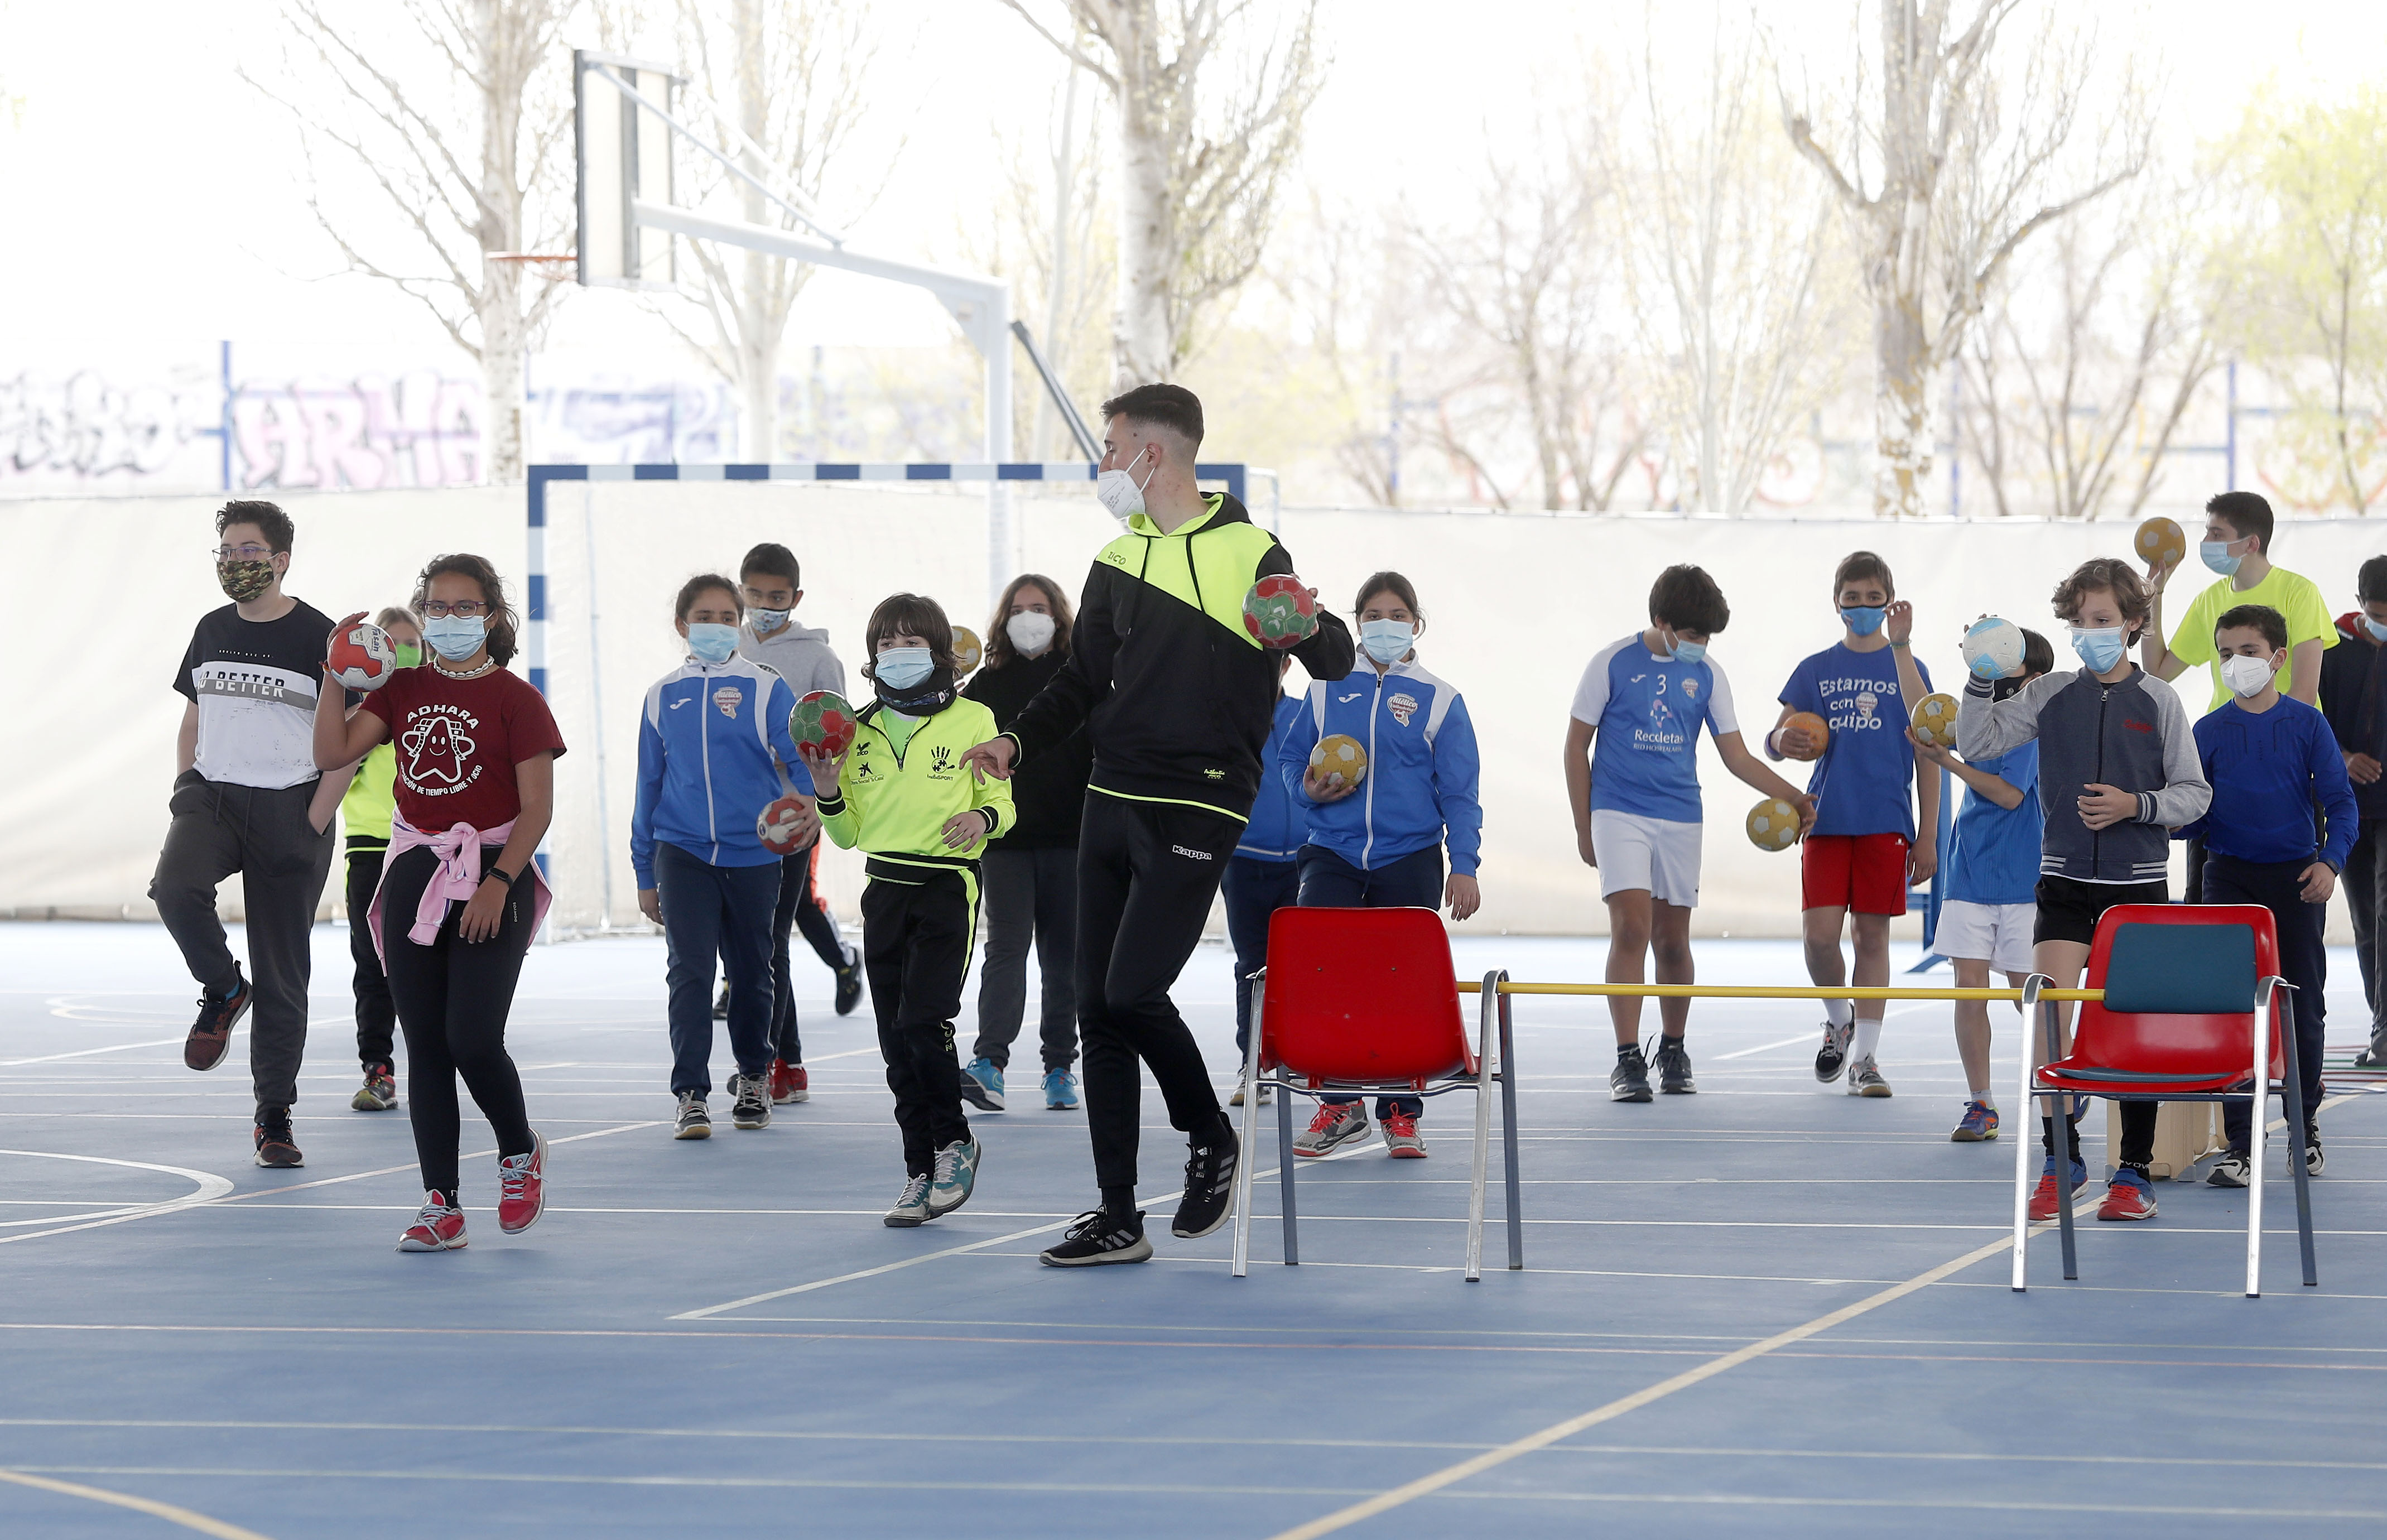 Formación, diversión y mucho balonmano en el Campus Deportivo de Semana Santa del Recoletas Atlético Valladolid | Galería 4 / 8